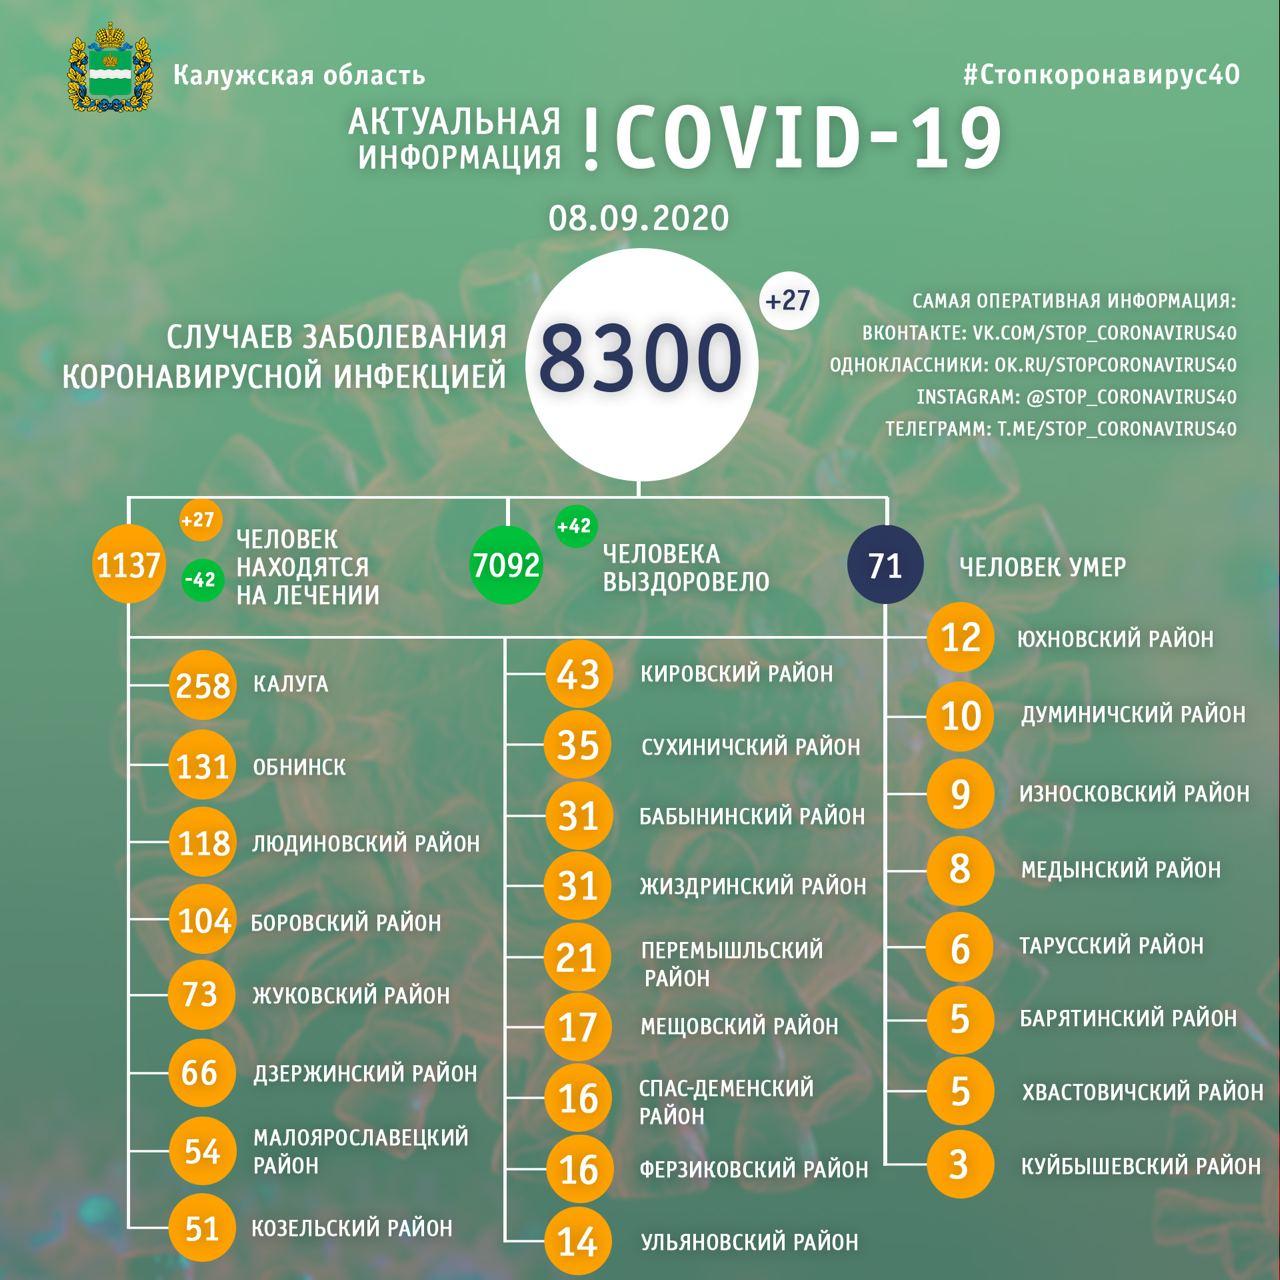 Официальная статистика по коронавирусу в Калужской области на 8 сентября 2020 года.